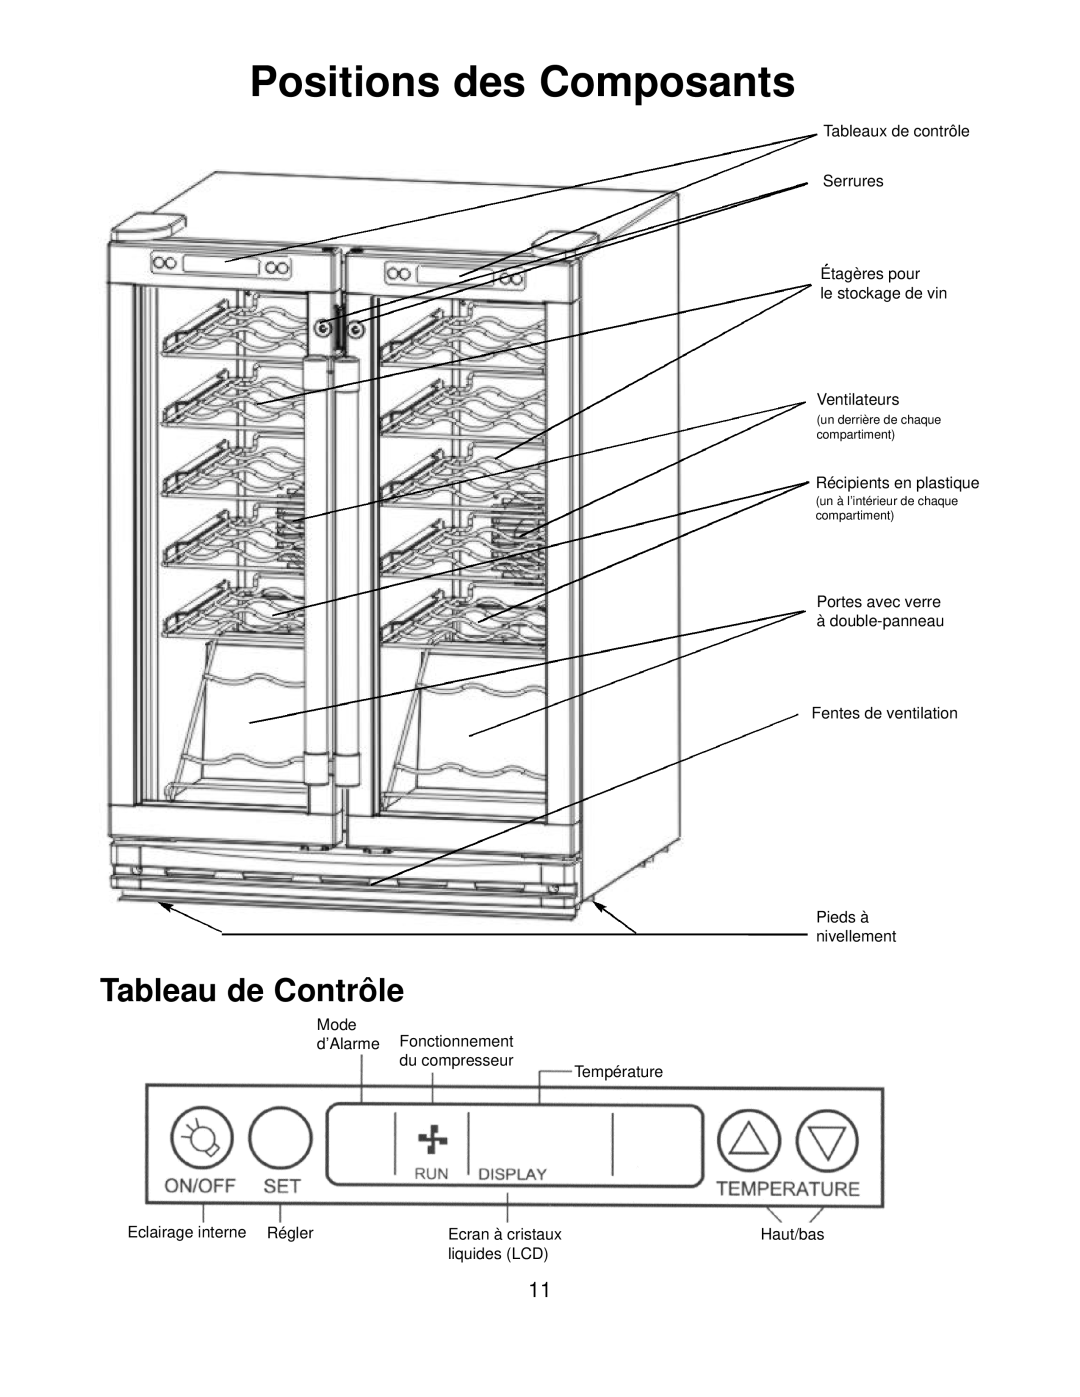 Franklin Industries, L.L.C FWC36 manual Positions des Composants, Tableau de Contrôle 